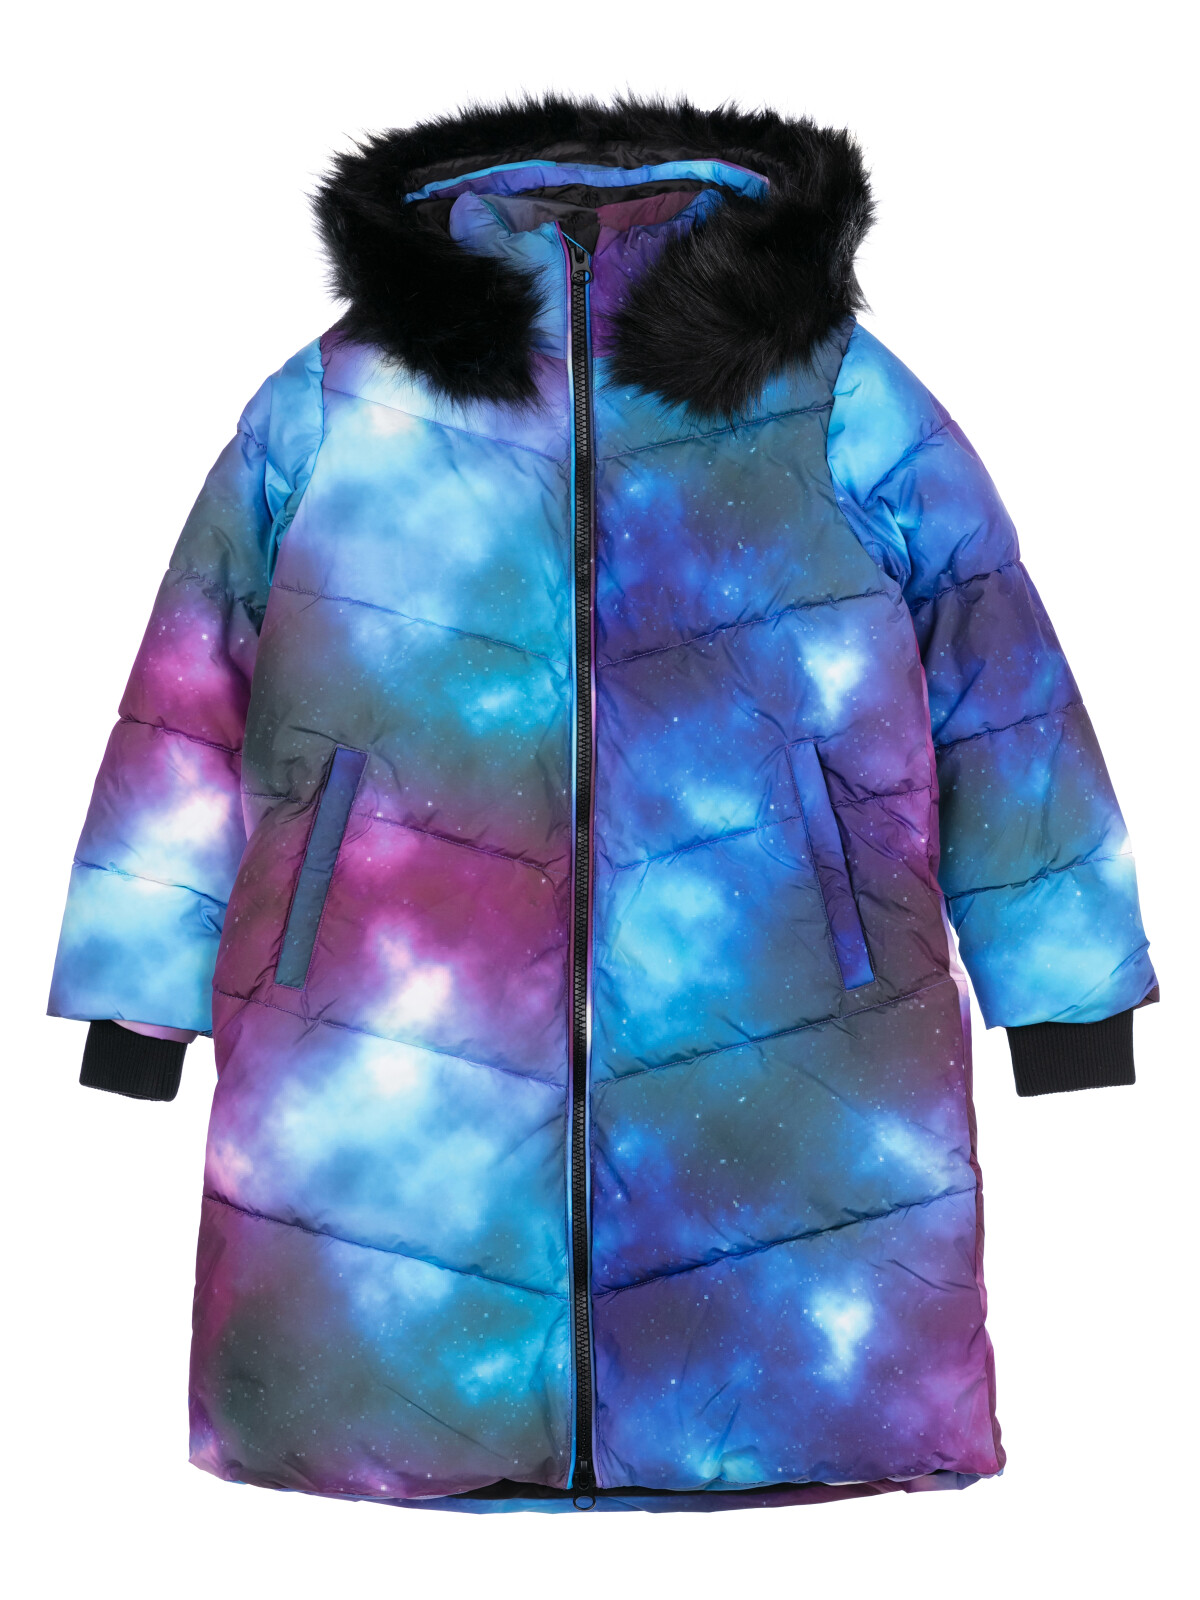 Пальто текстильное с полиуретановым покрытием для девочек PlayToday, цветной, 146